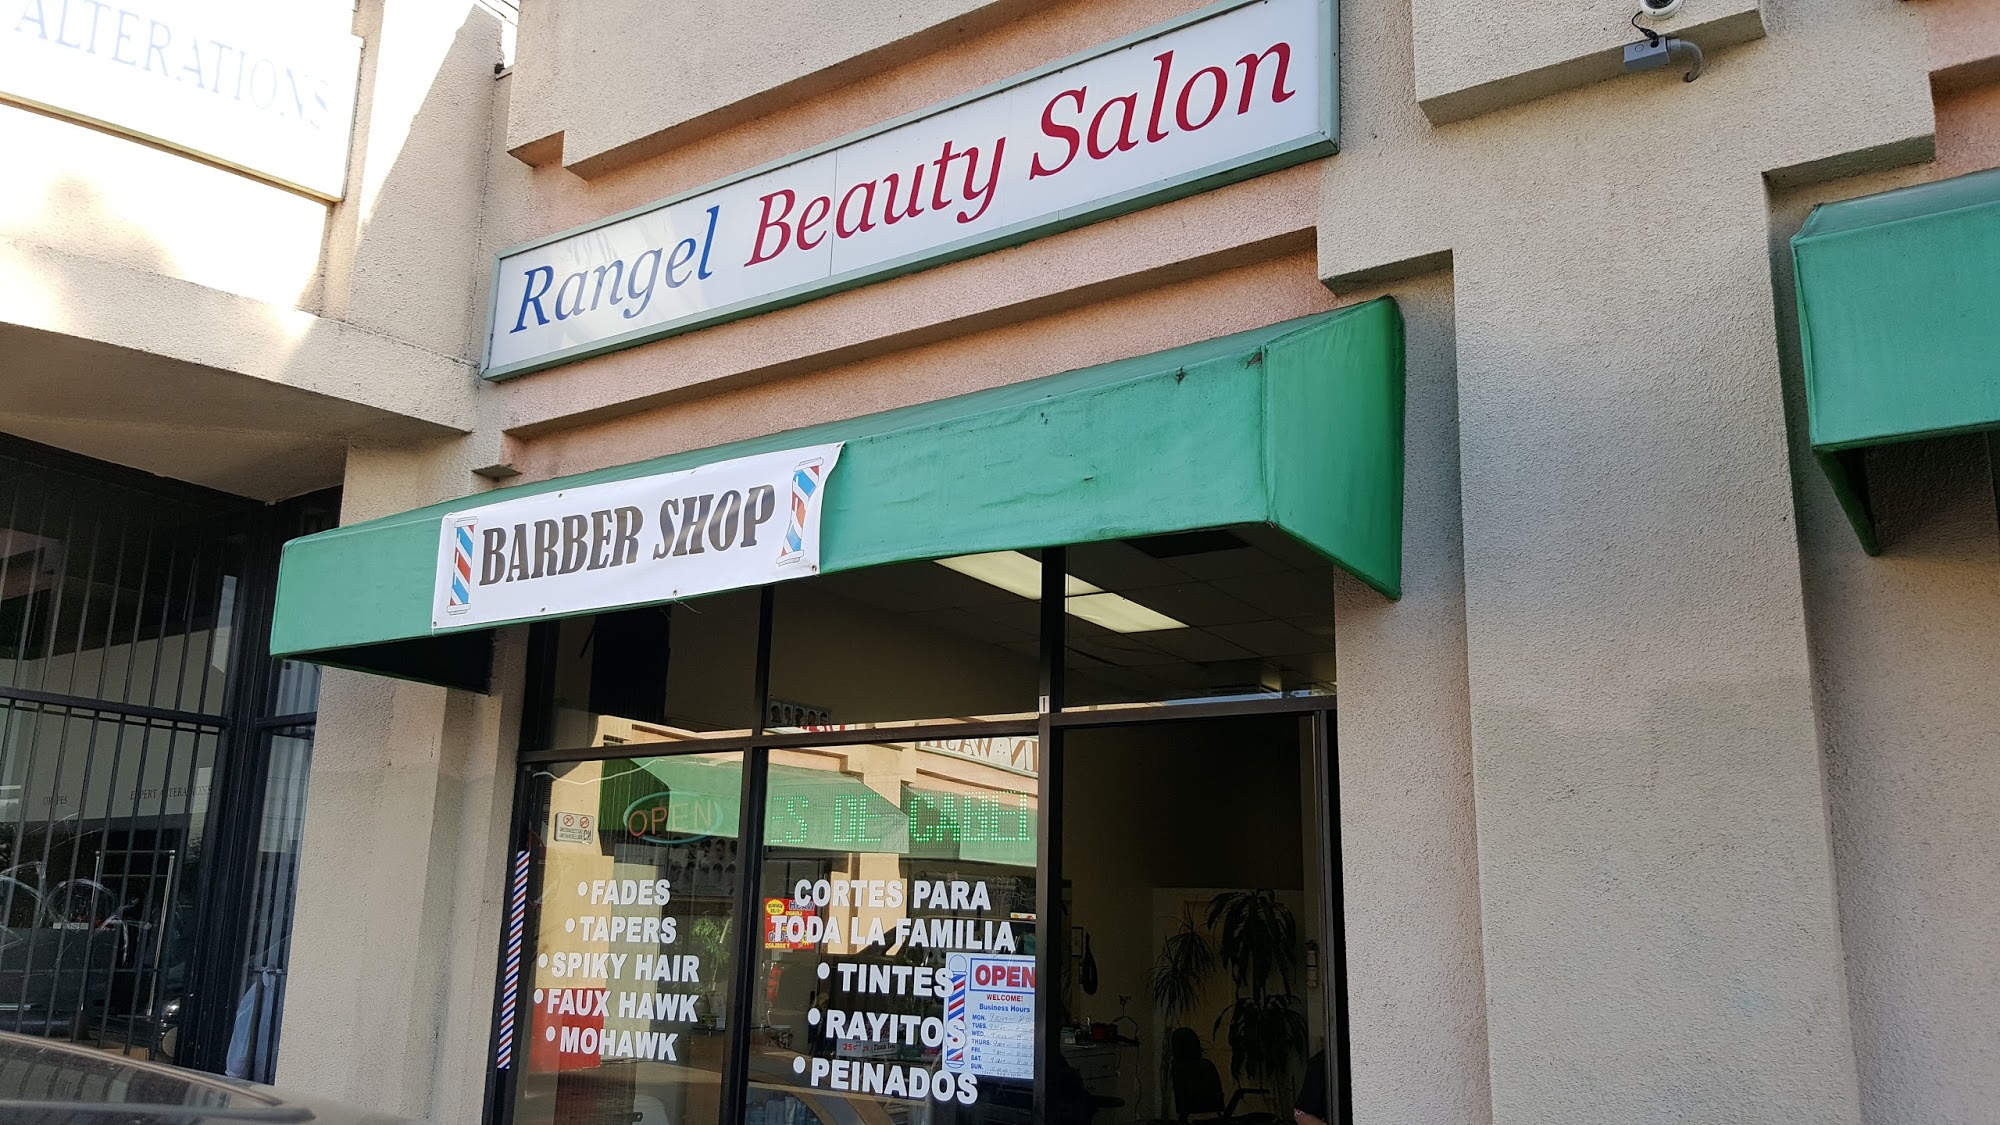 Rangel Beauty Salon